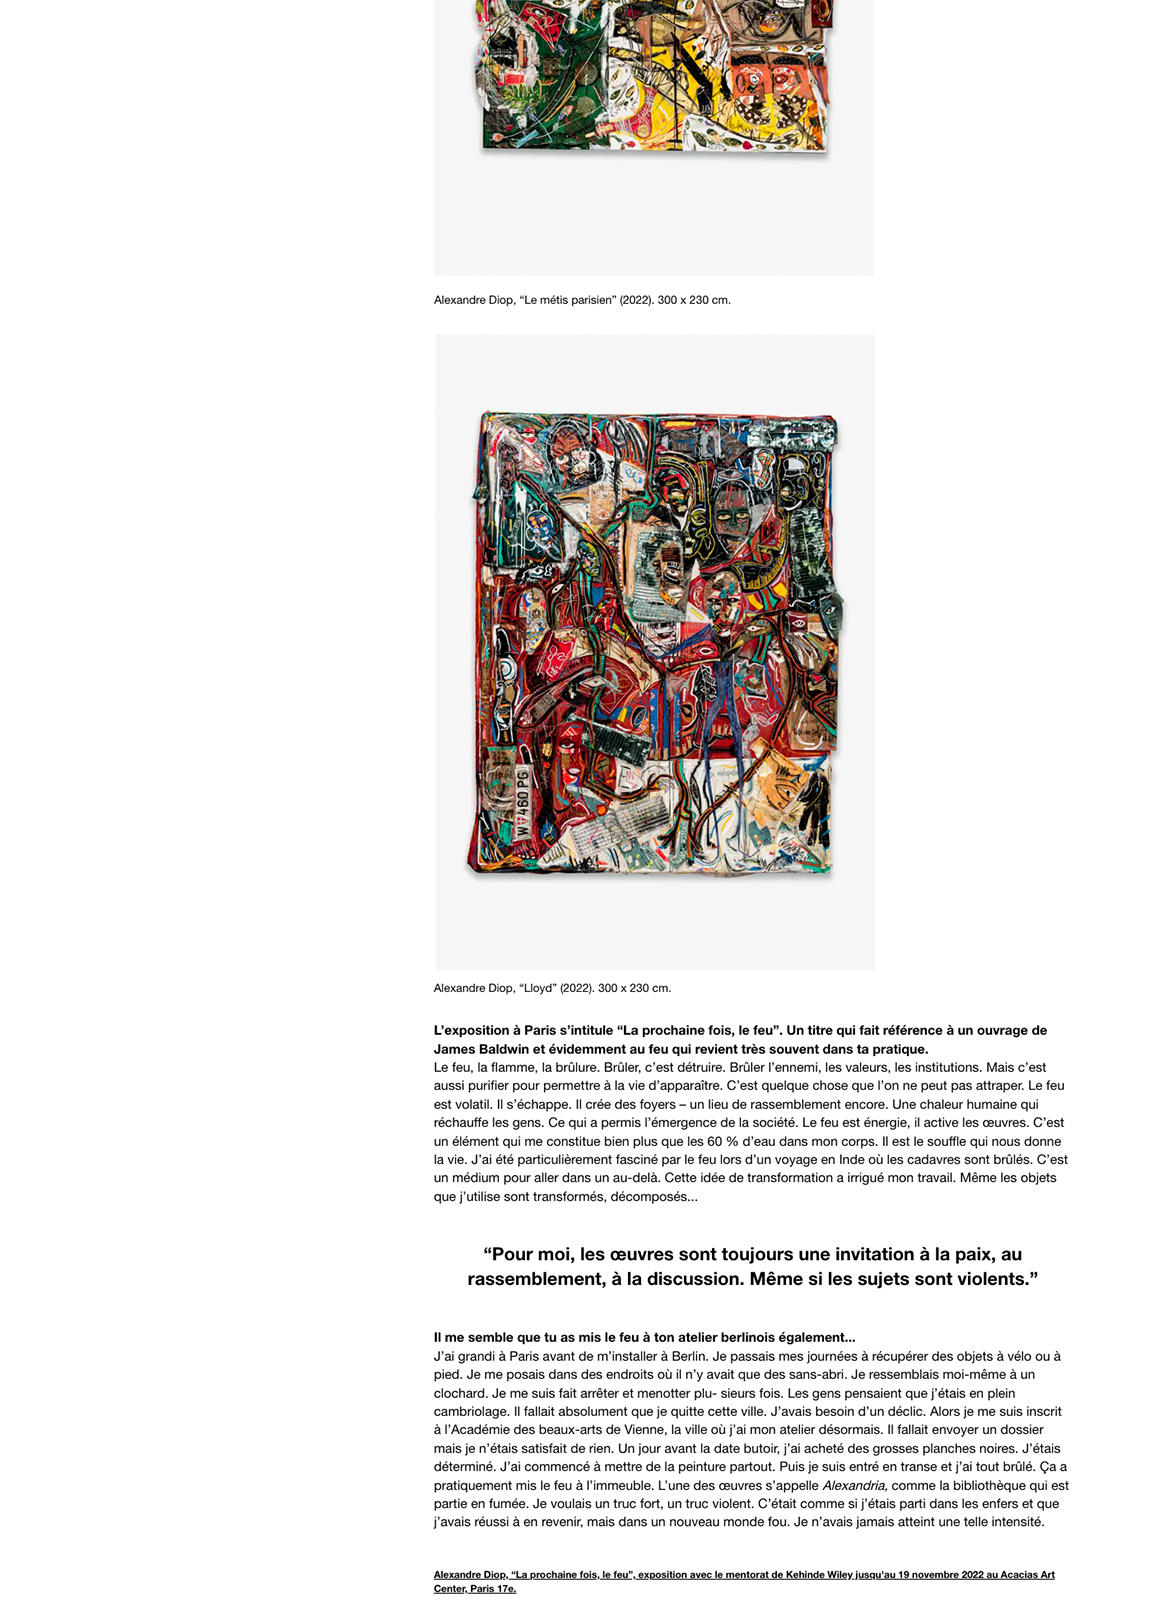 Qui est Alexandre Diop, le jeune artiste protégé de Kehinde Wiley exposé pour la première fois à Paris ?